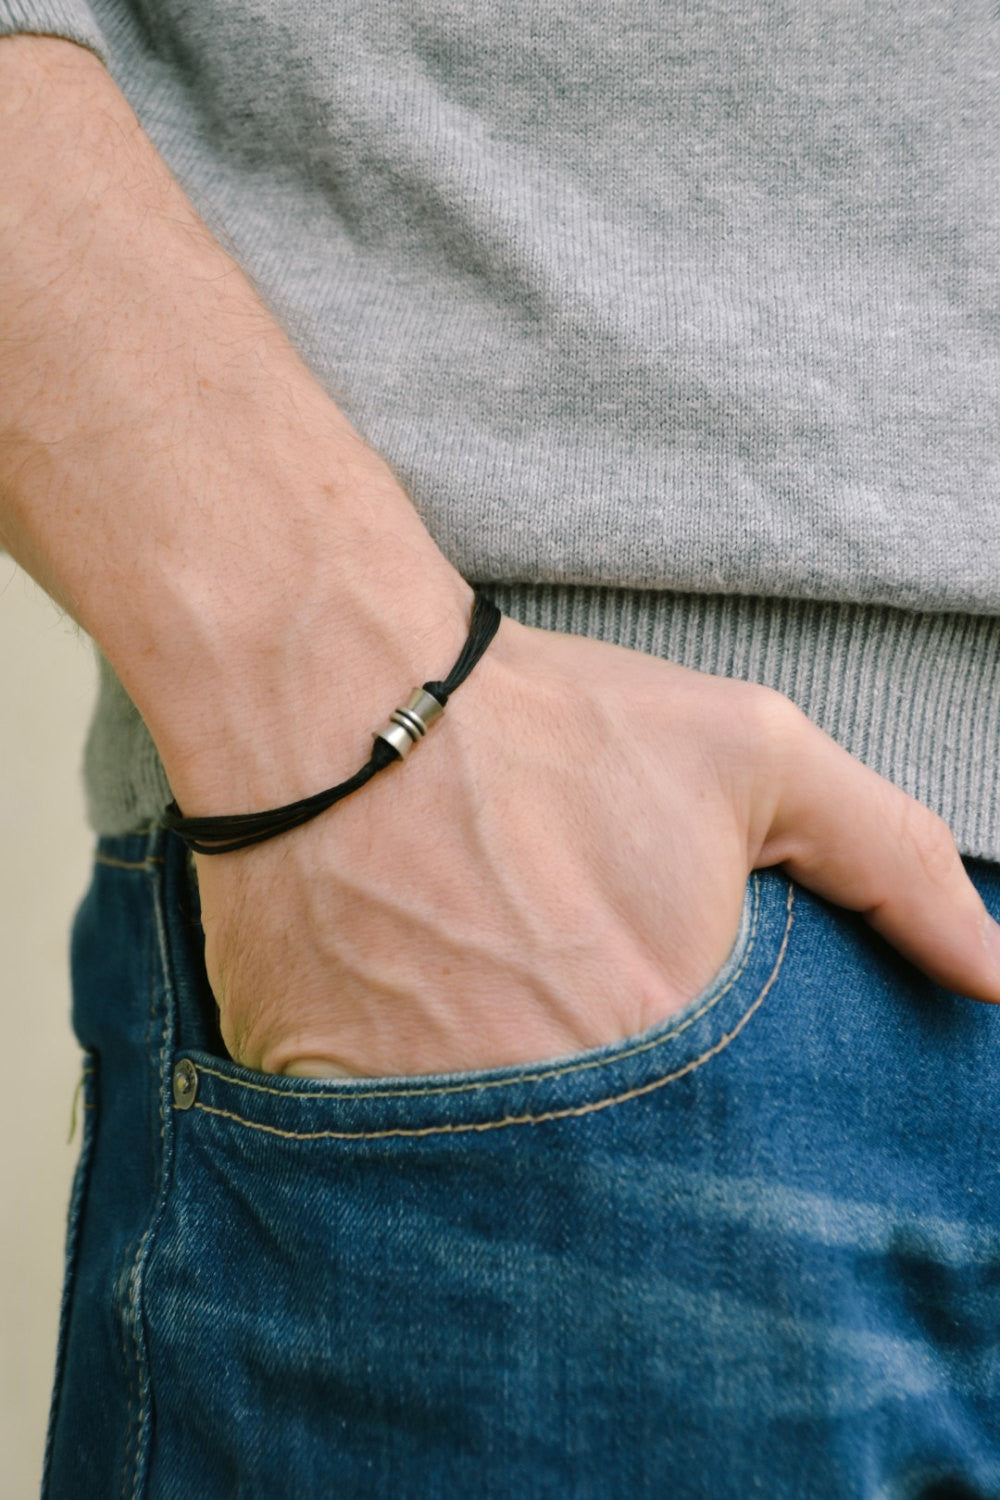 Black String Bracelet Mens Bracelet Men's Jewelry Gift 